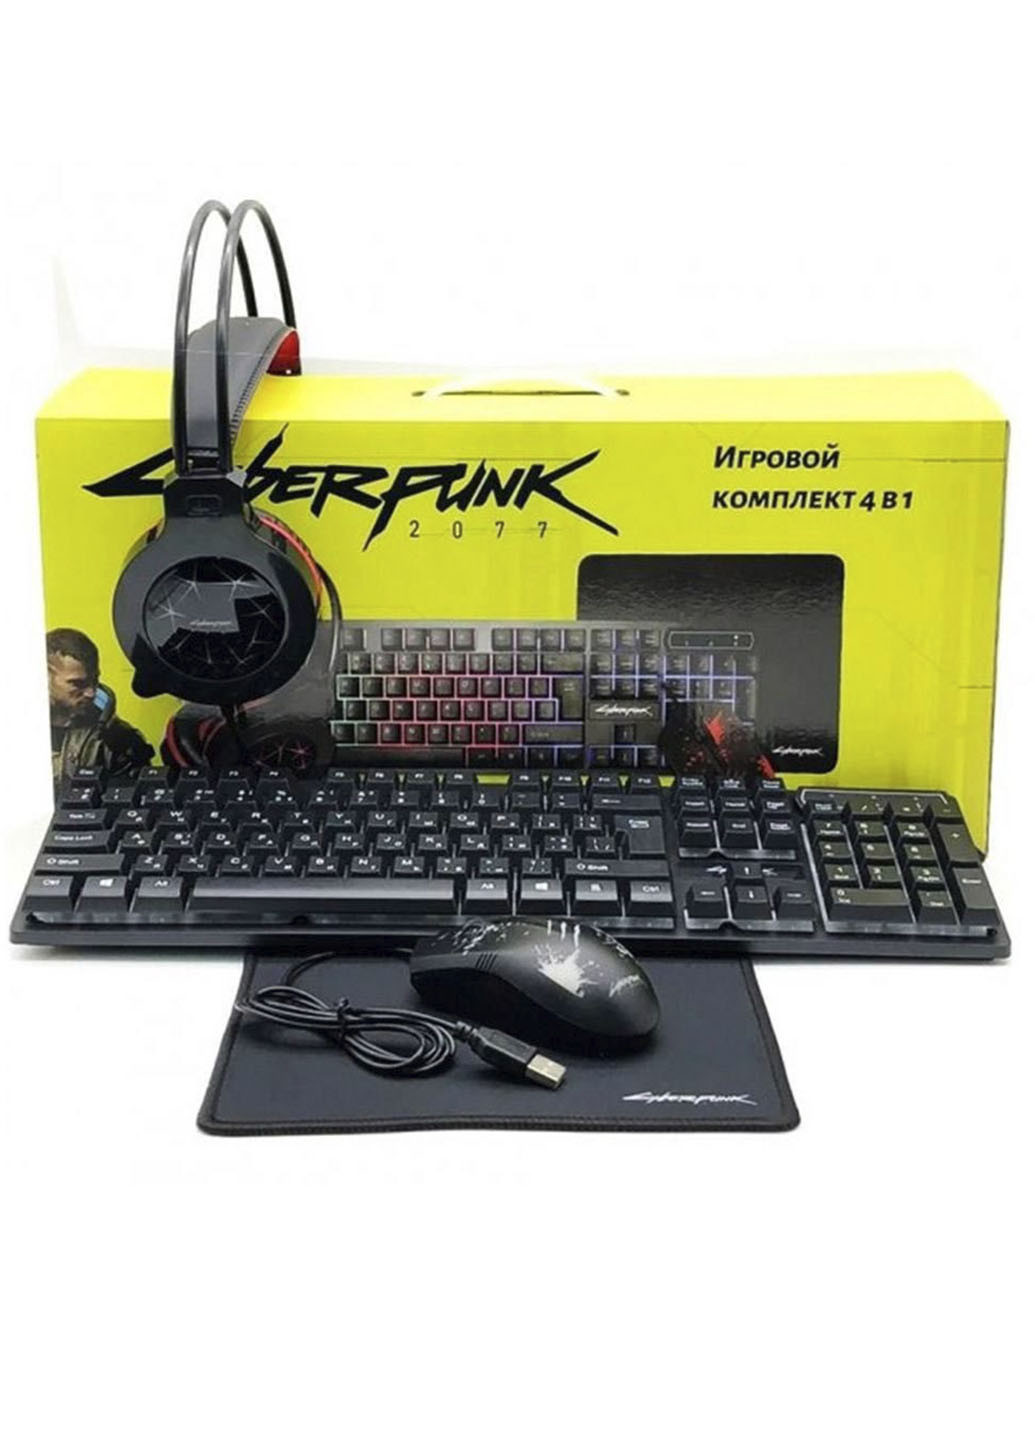 Ігровий комплект 4 в 1 Cyberpunk CP-009 (клавіатура + мишка + навушники + килимок) XO чорна